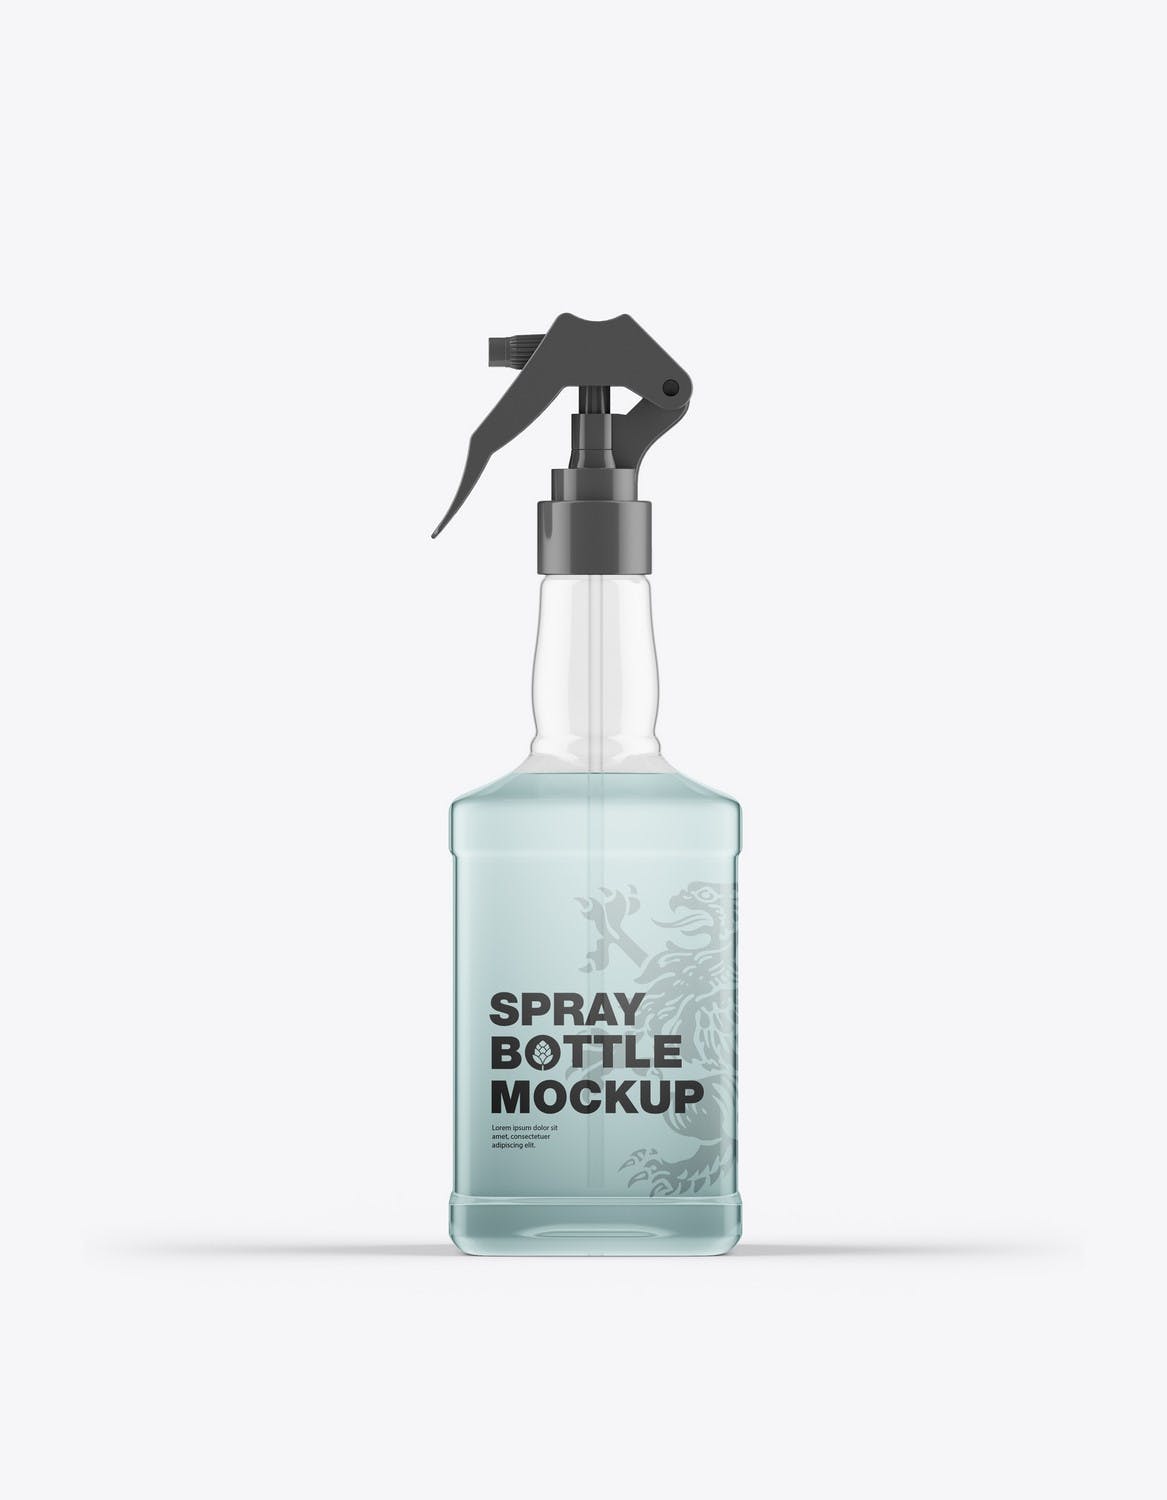 玻璃喷雾瓶包装设计样机 Pack Glass Spray Bottles Mockup 样机素材 第8张